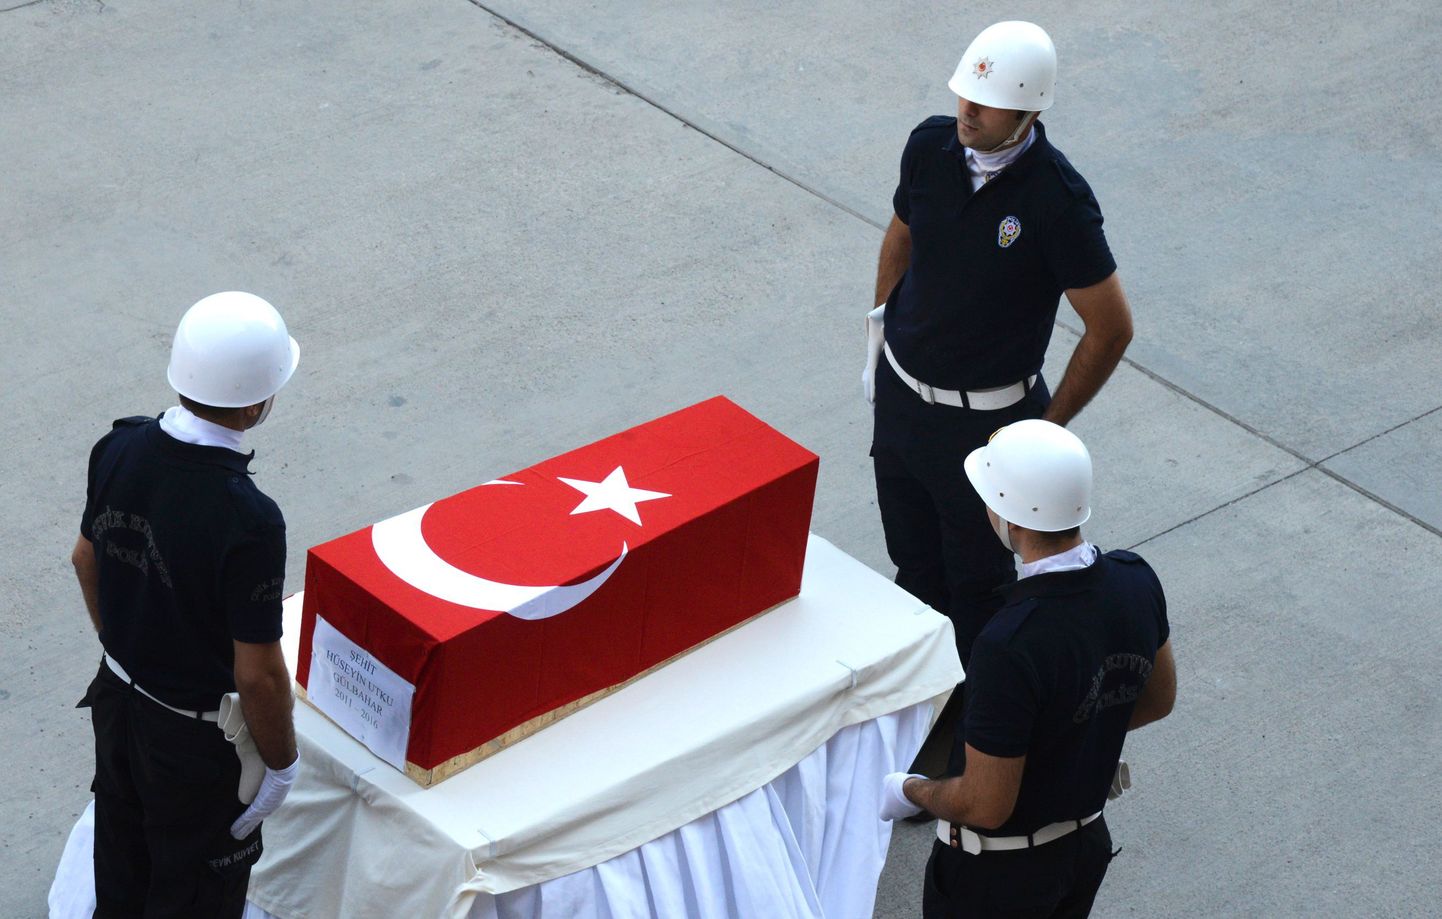 Pommiplahvatuste ohvri matmine Türgis. Kurdistani töölisparteid (PKK) on süüdistatud mitmes Kagu-Türgis toimunud plahvatuses.